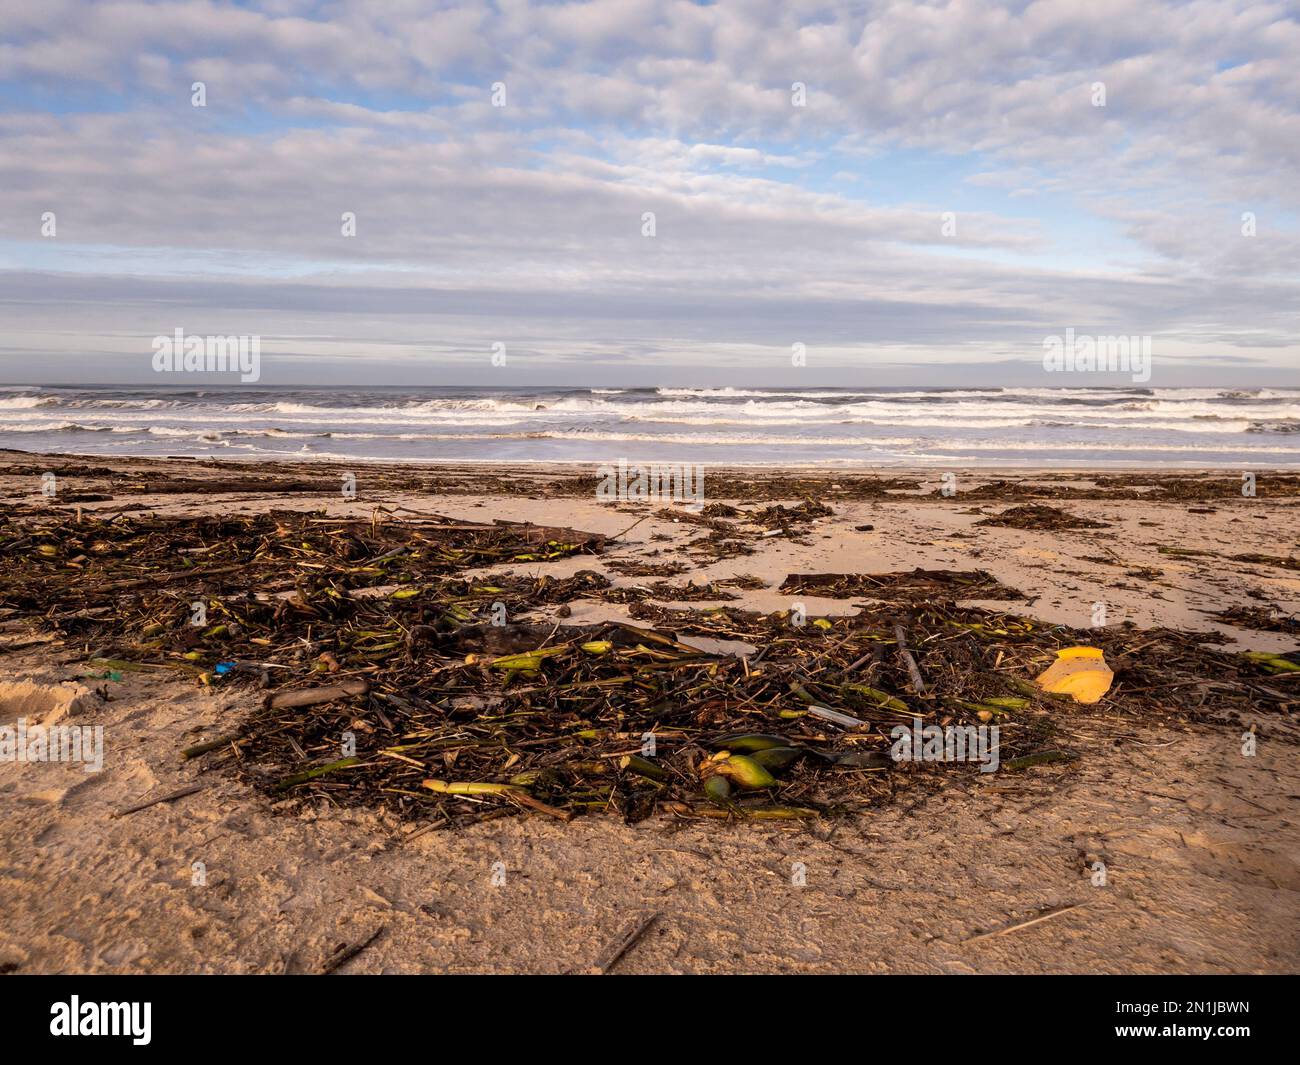 Plage sale à Quiaios, Portugal. Restes de plantes et de déchets lavés sur le sable. Conséquences des fortes pluies et des glissements de terrain Banque D'Images